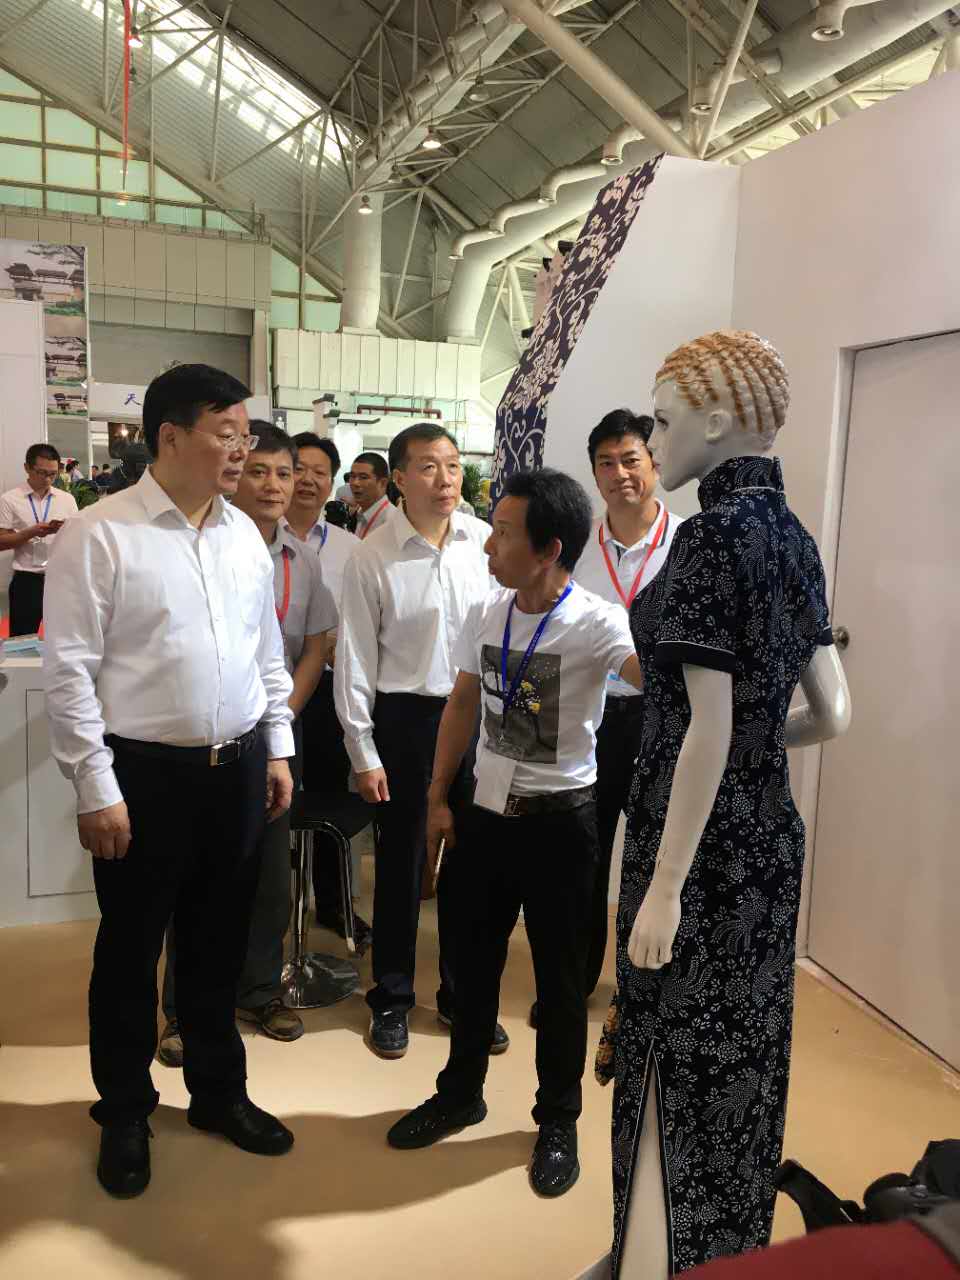 衣园参加江苏版权贸易博览会展示版权产业发展